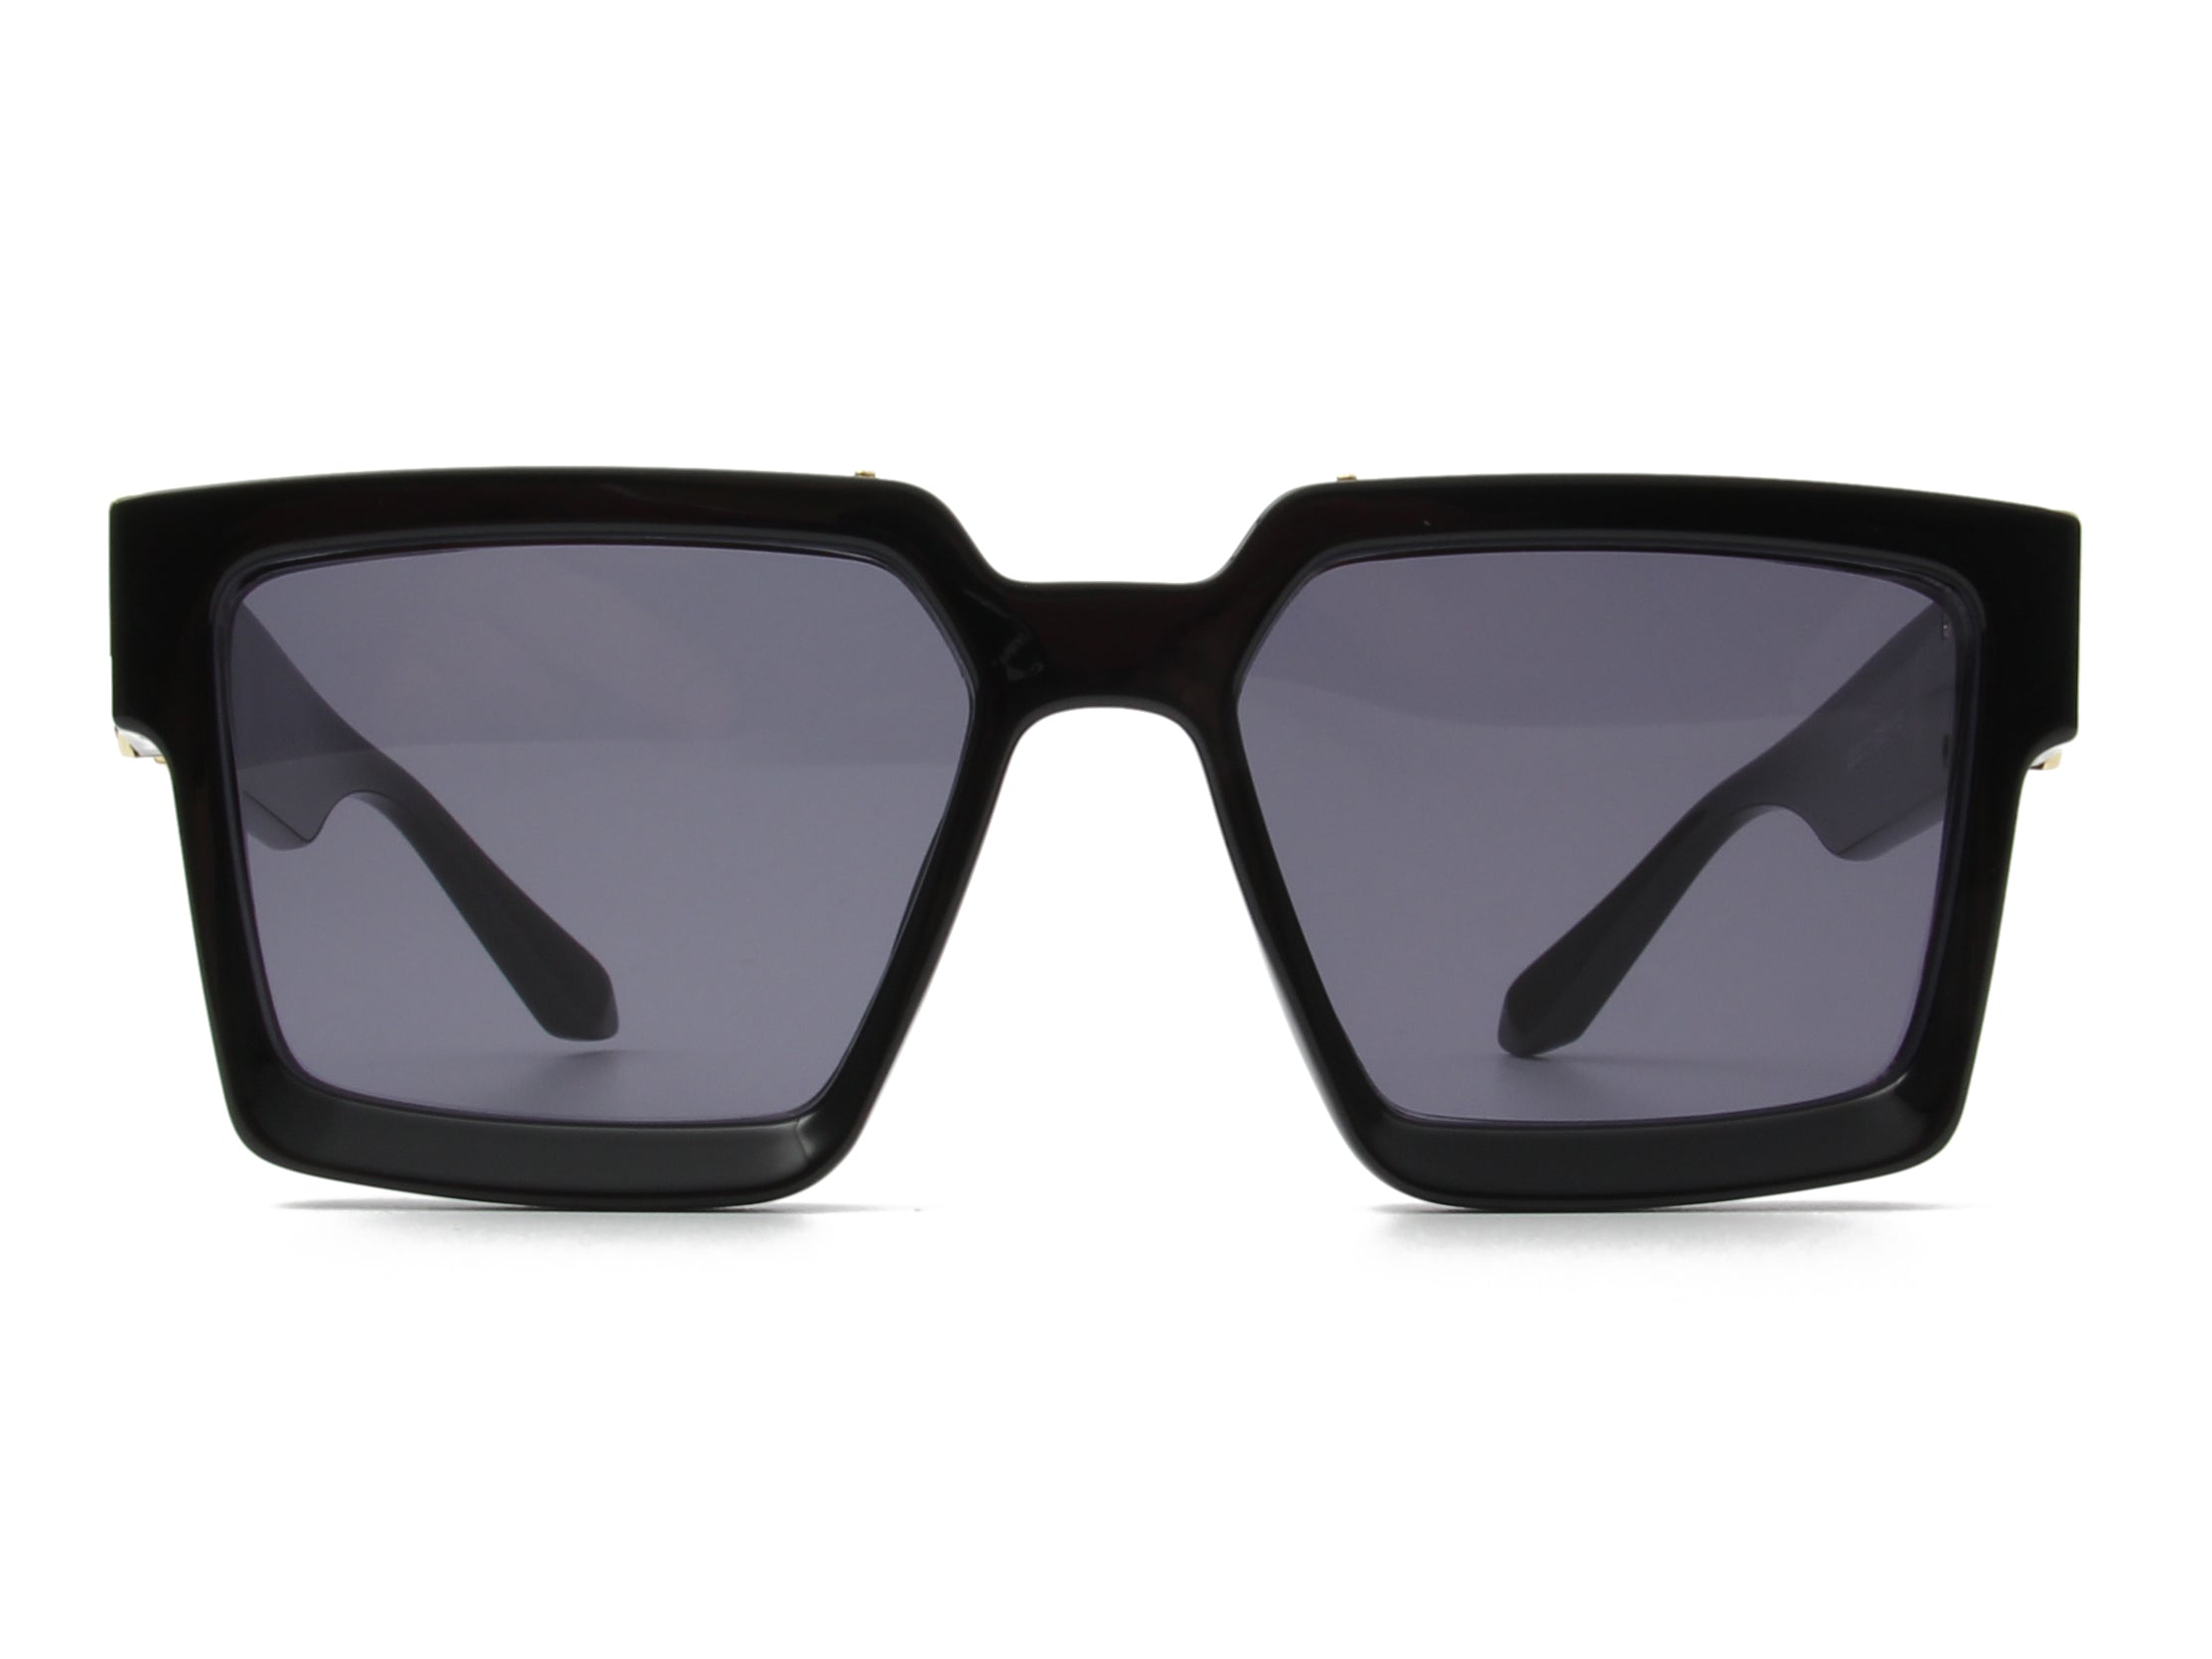 S2033 - Classic Retro Vintage Square Fashion Sunglasses